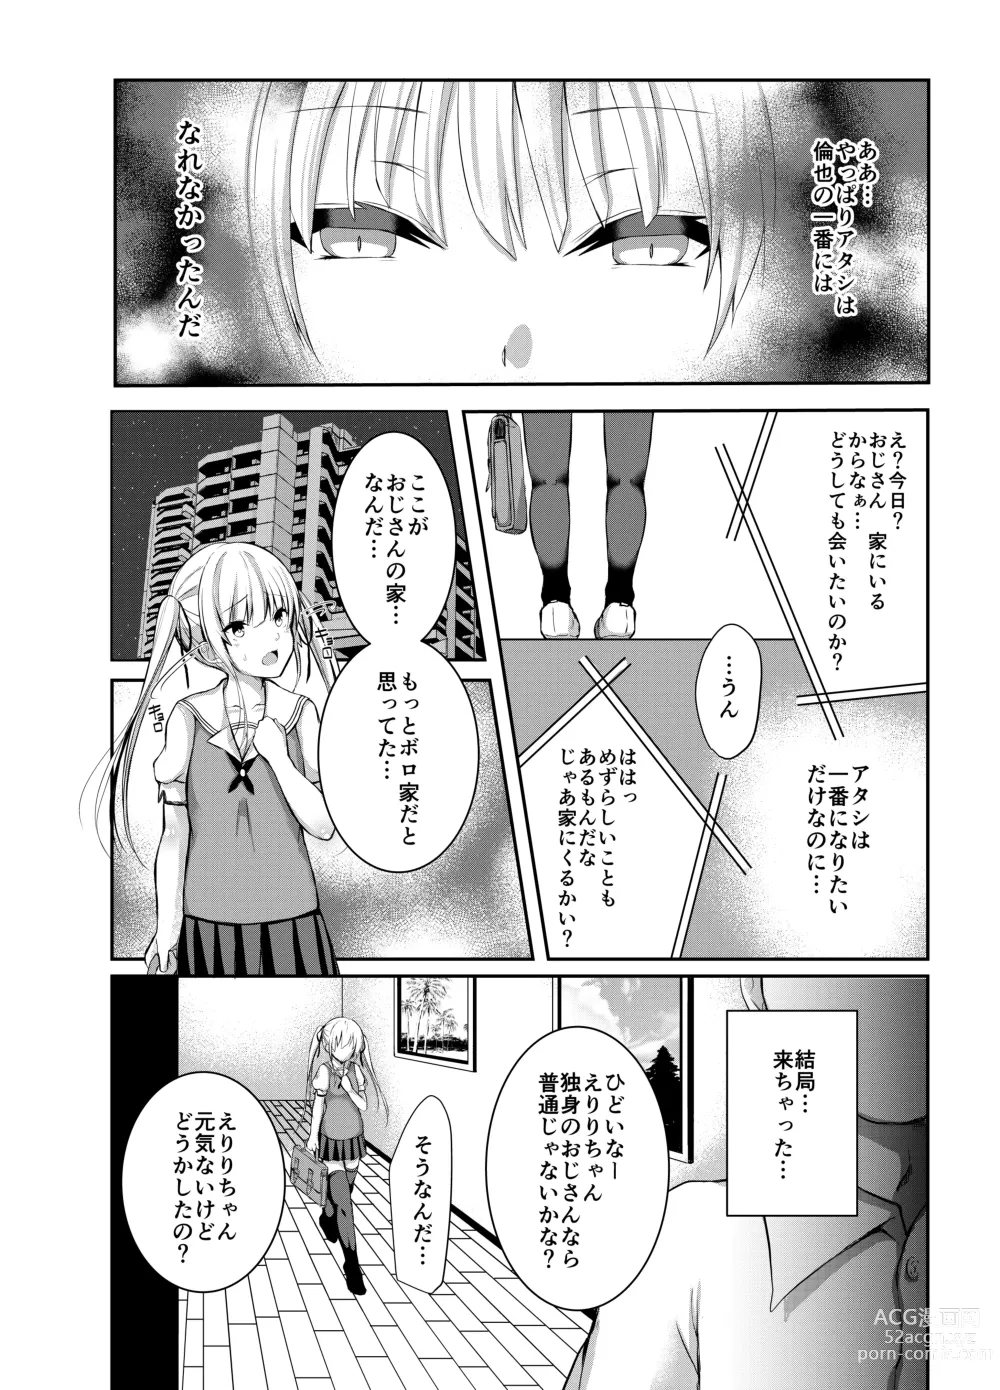 Page 9 of doujinshi Saeman 3